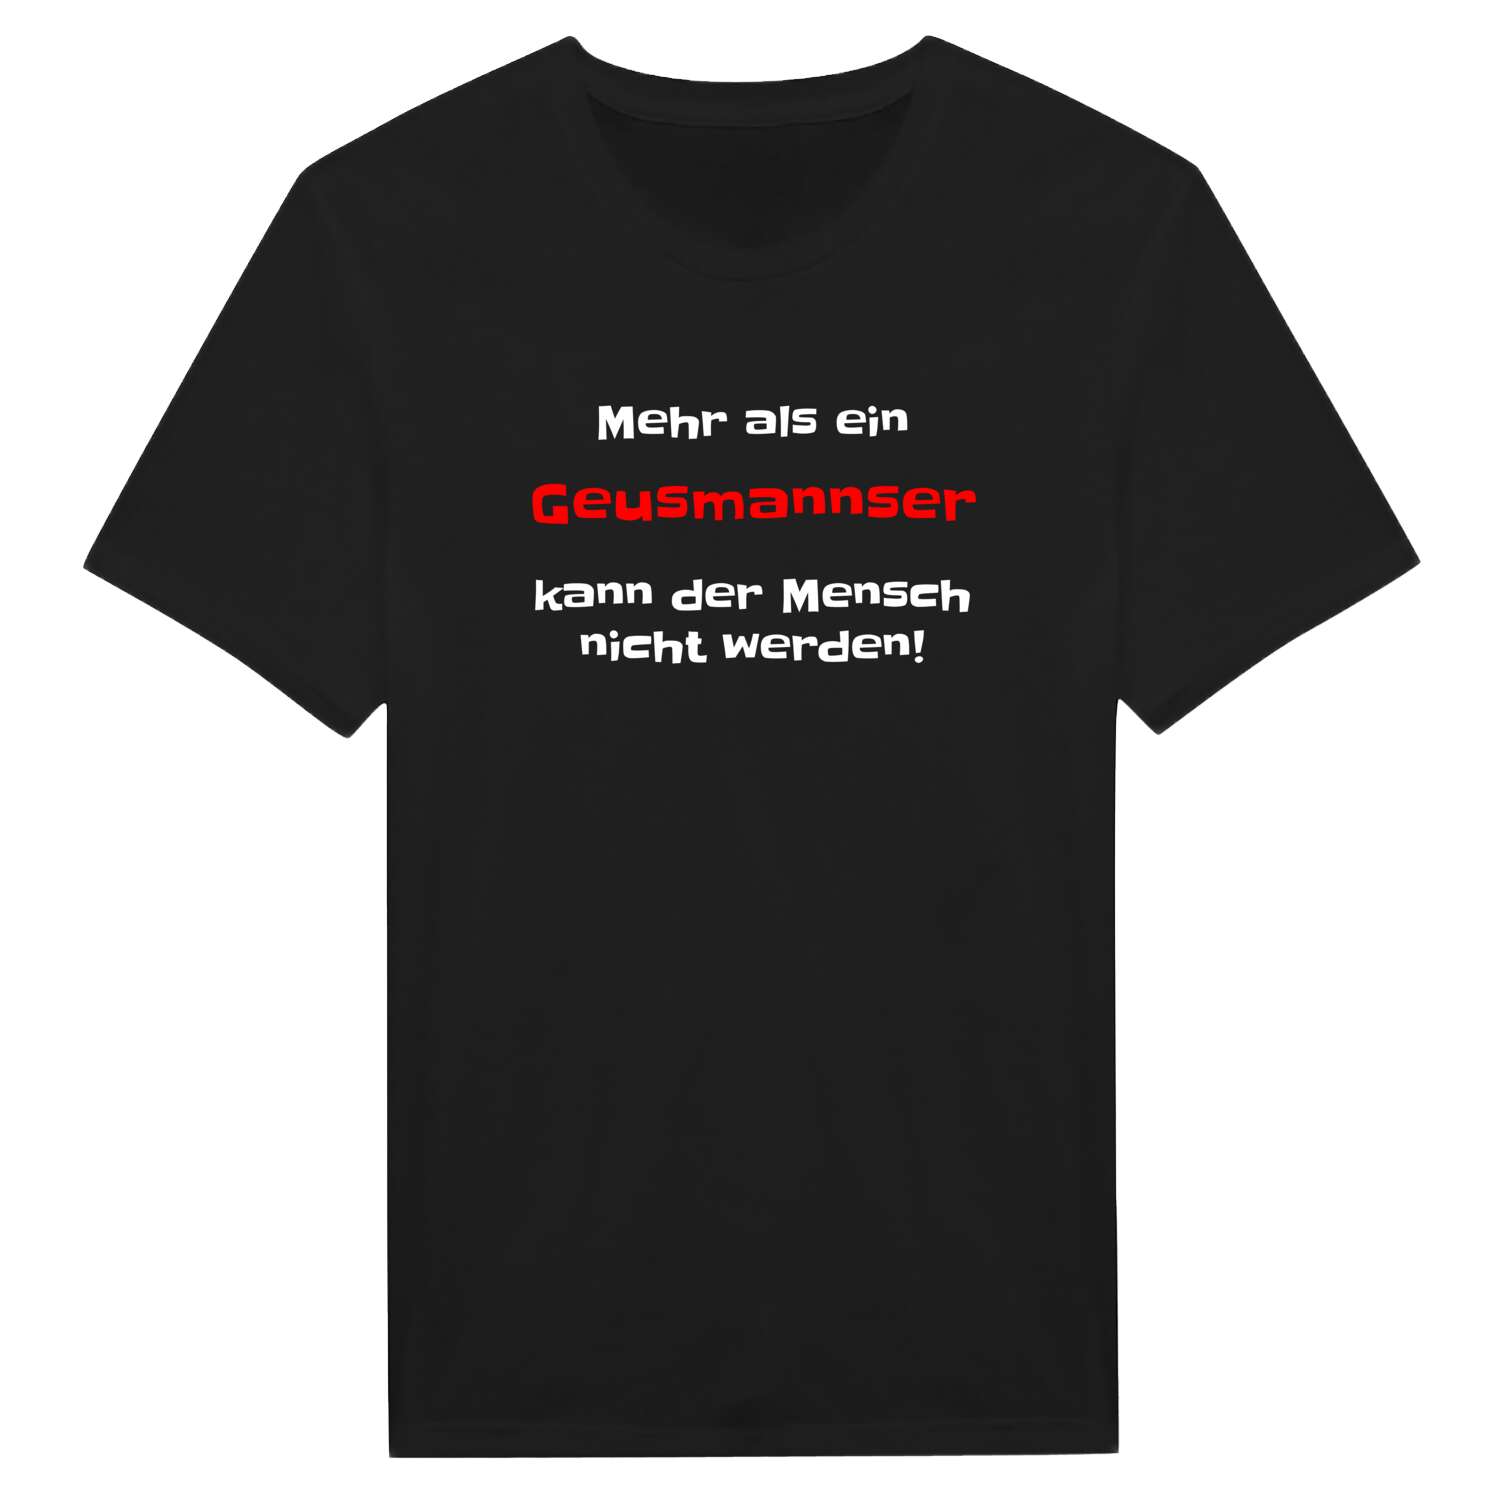 Geusmanns T-Shirt »Mehr als ein«